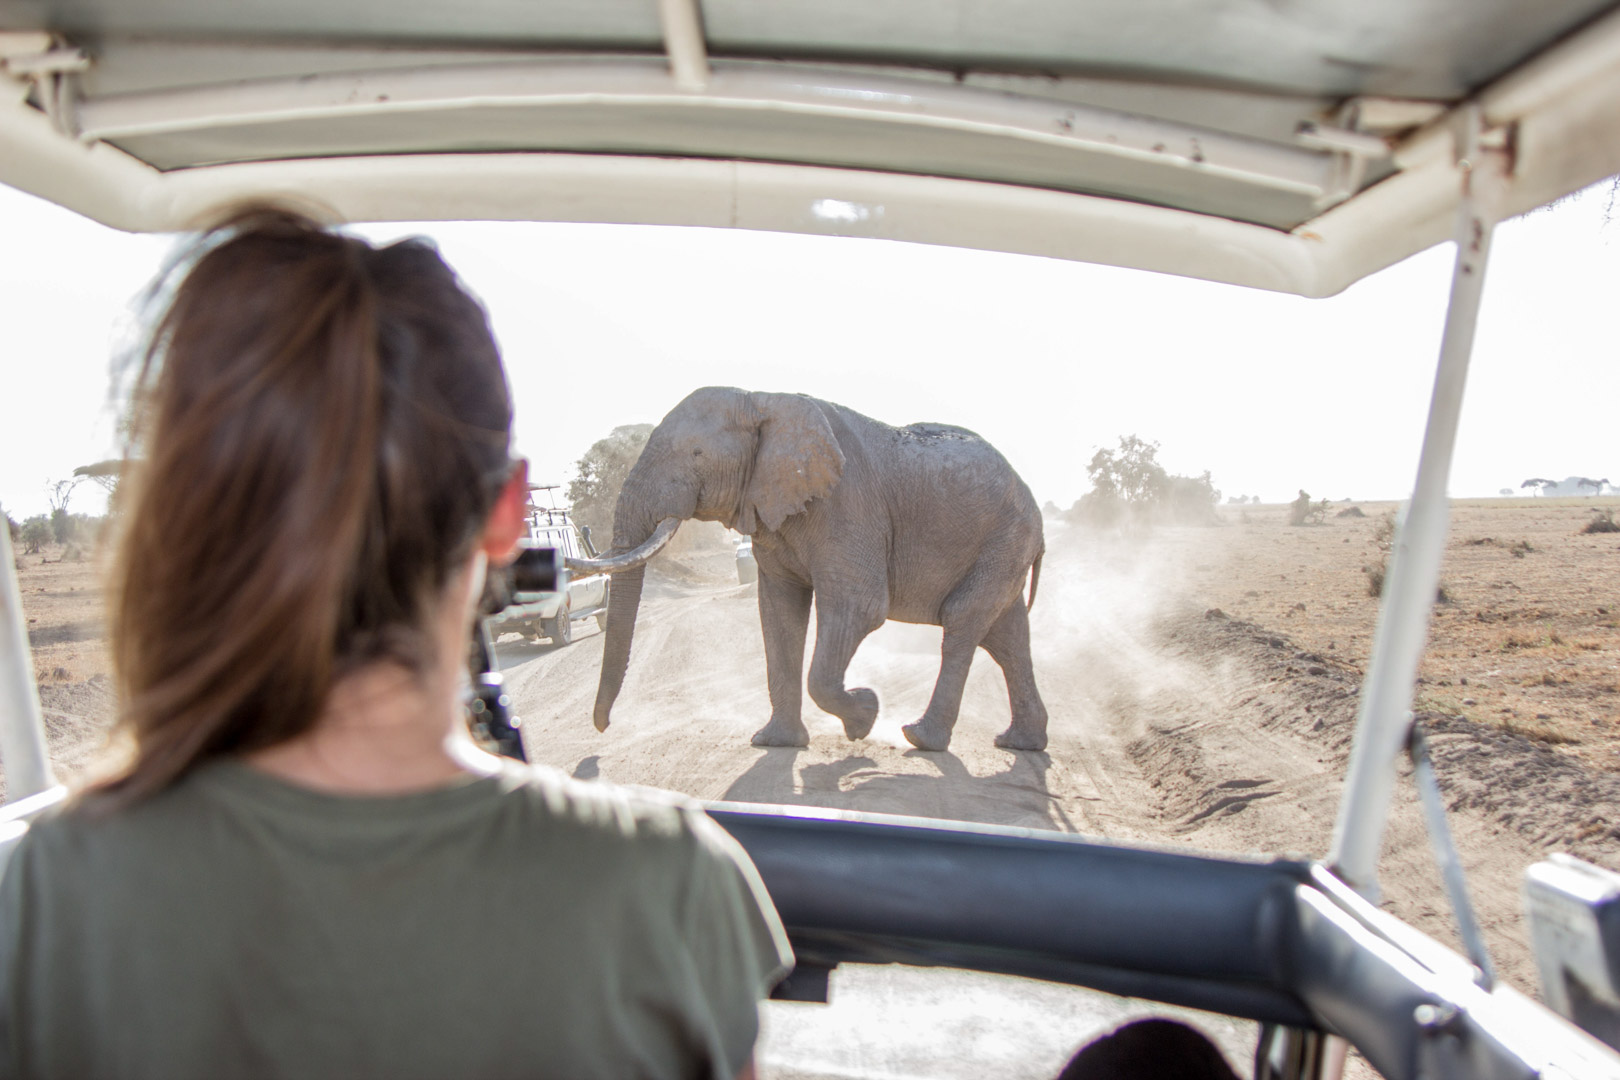 Elefante cruzando el camino, Parque Nacional de Amboseli, Kenia